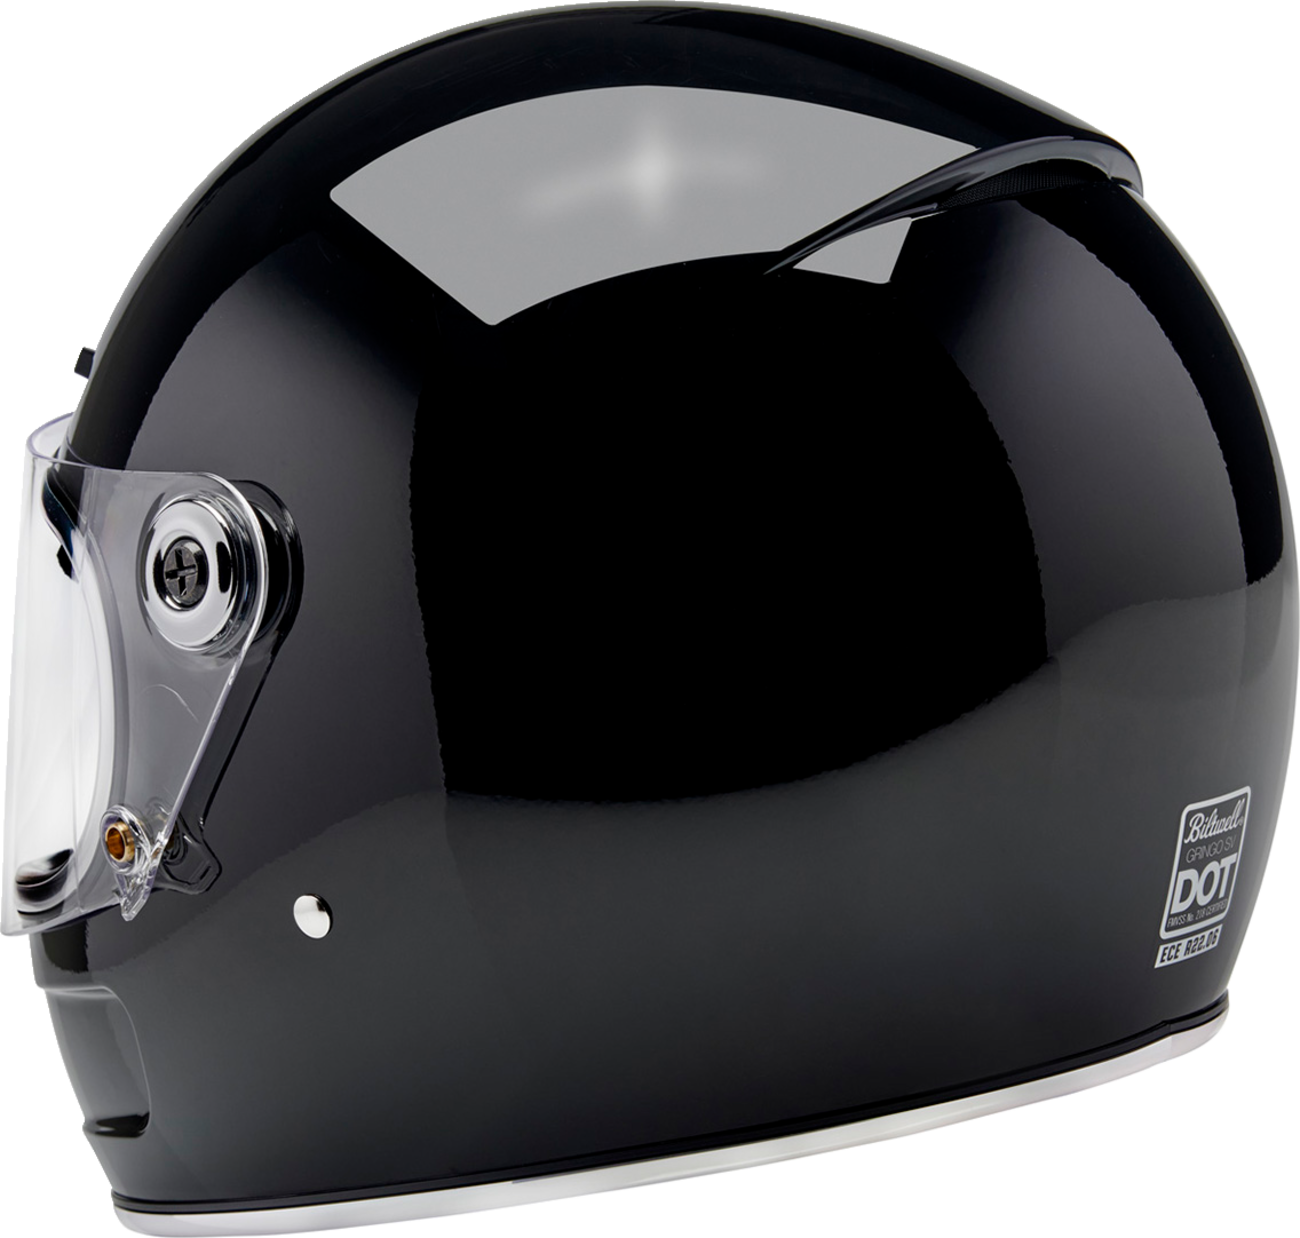 BILTWELL Gringo SV Helmet - Gloss Black - Small 1006-101-502